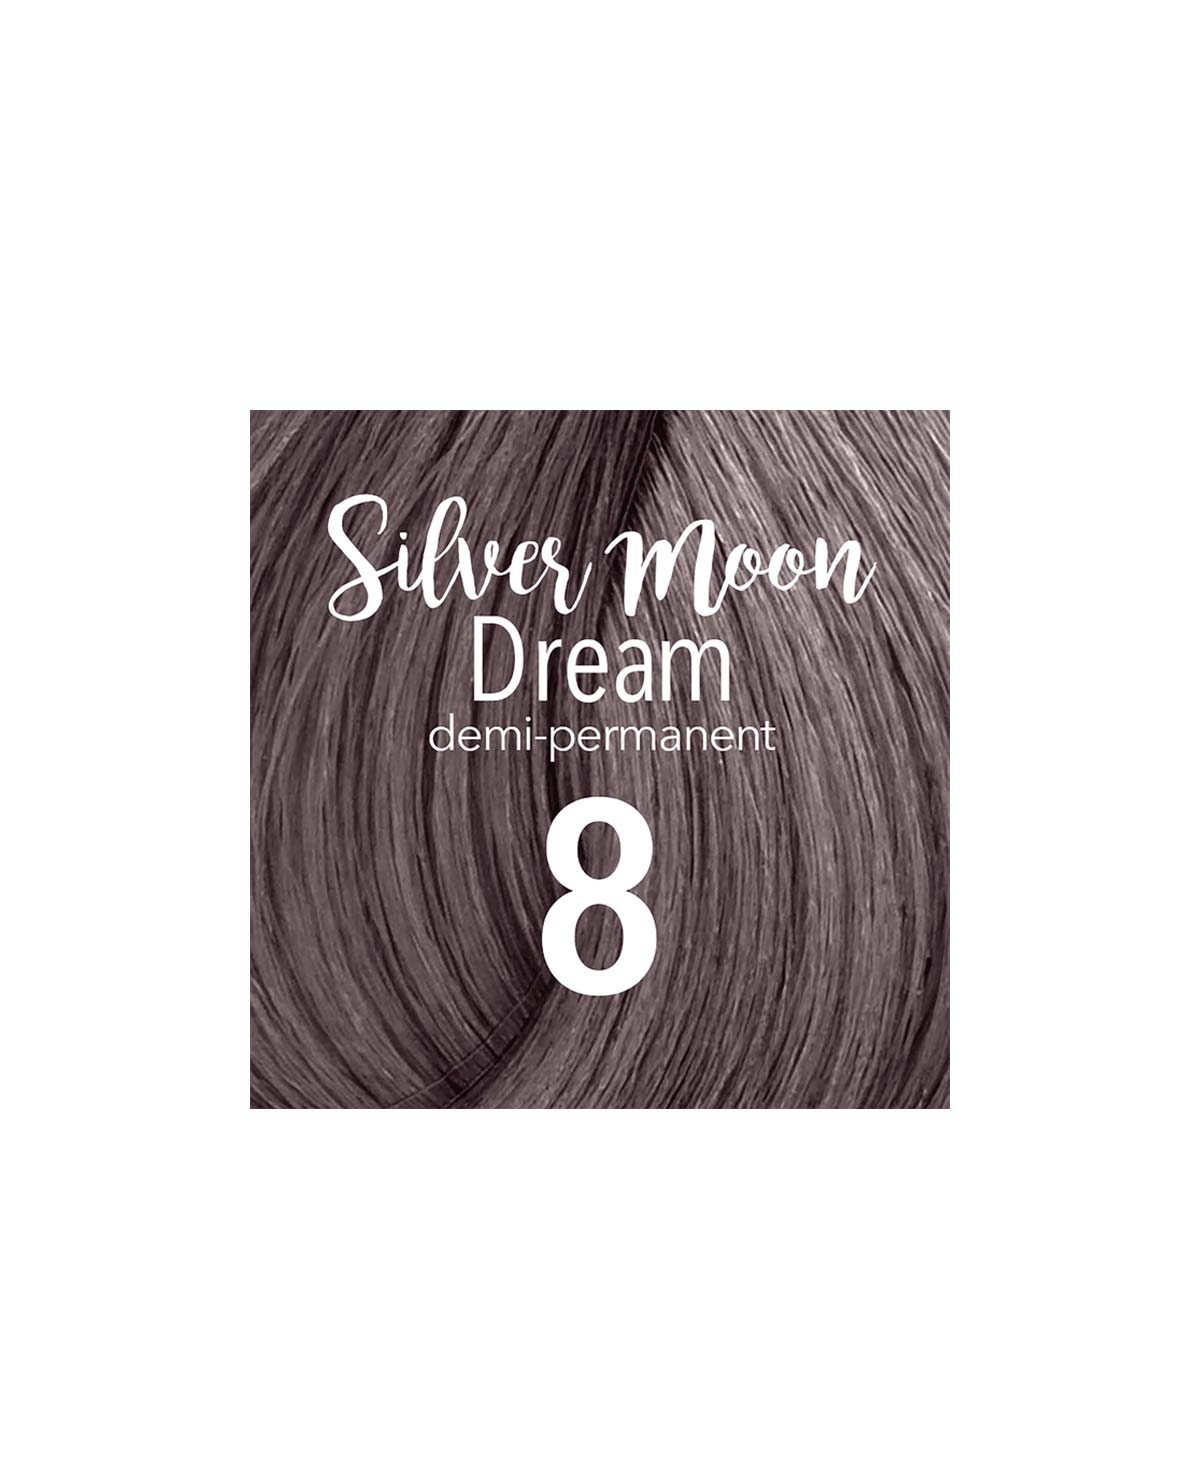 Mydentity - DEMI 8 Silver Moon Dream Blonde